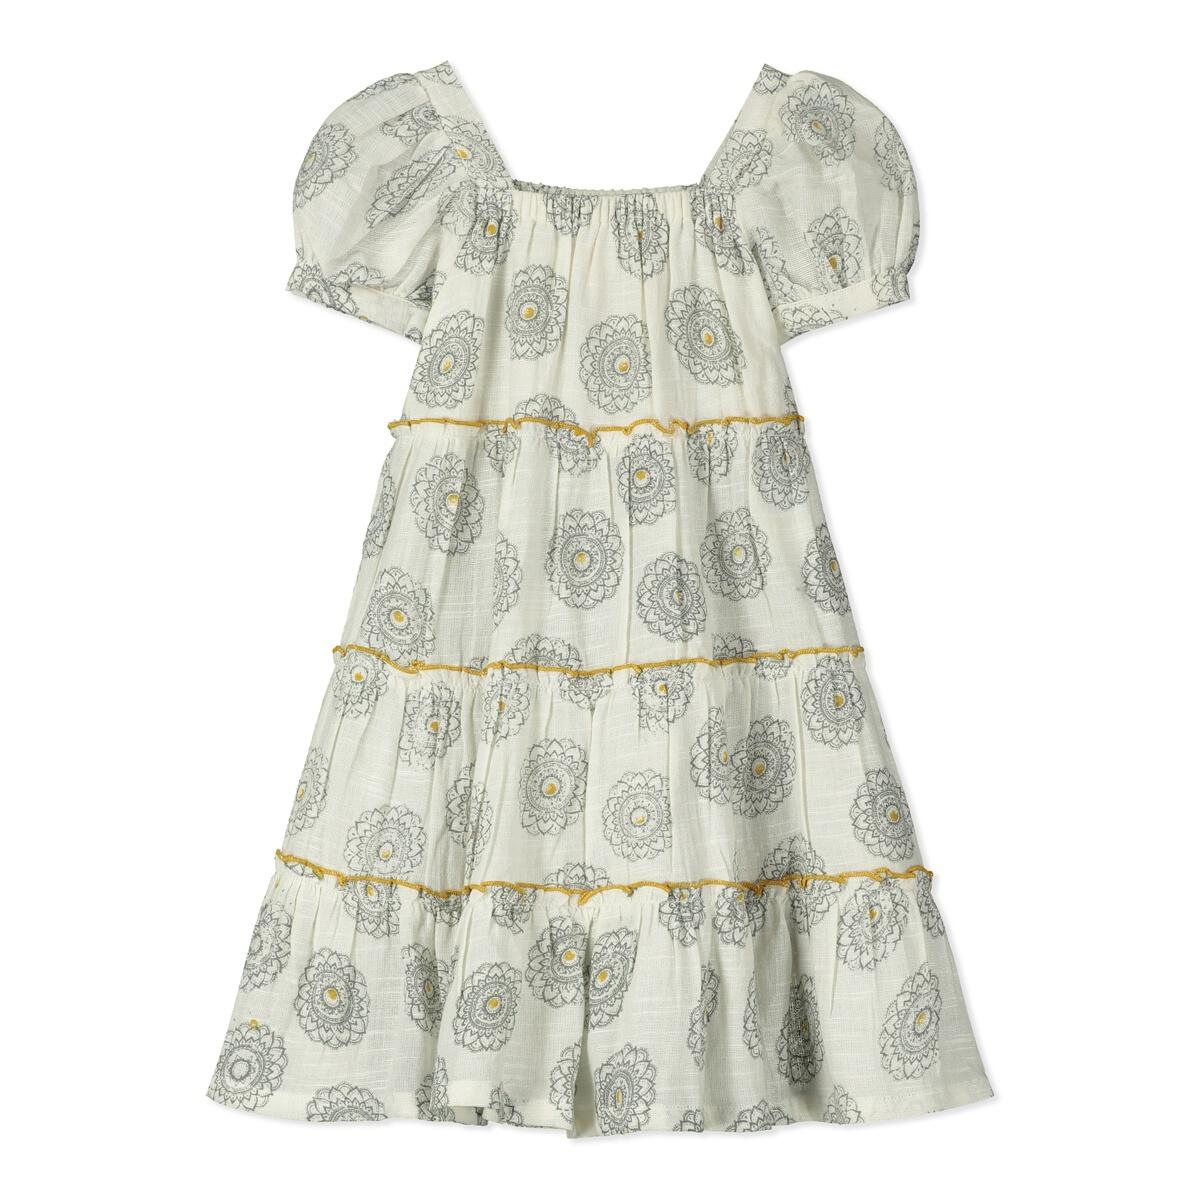 Marrakech Subtle Pattern Woven Dress - Twinkle Twinkle Little One